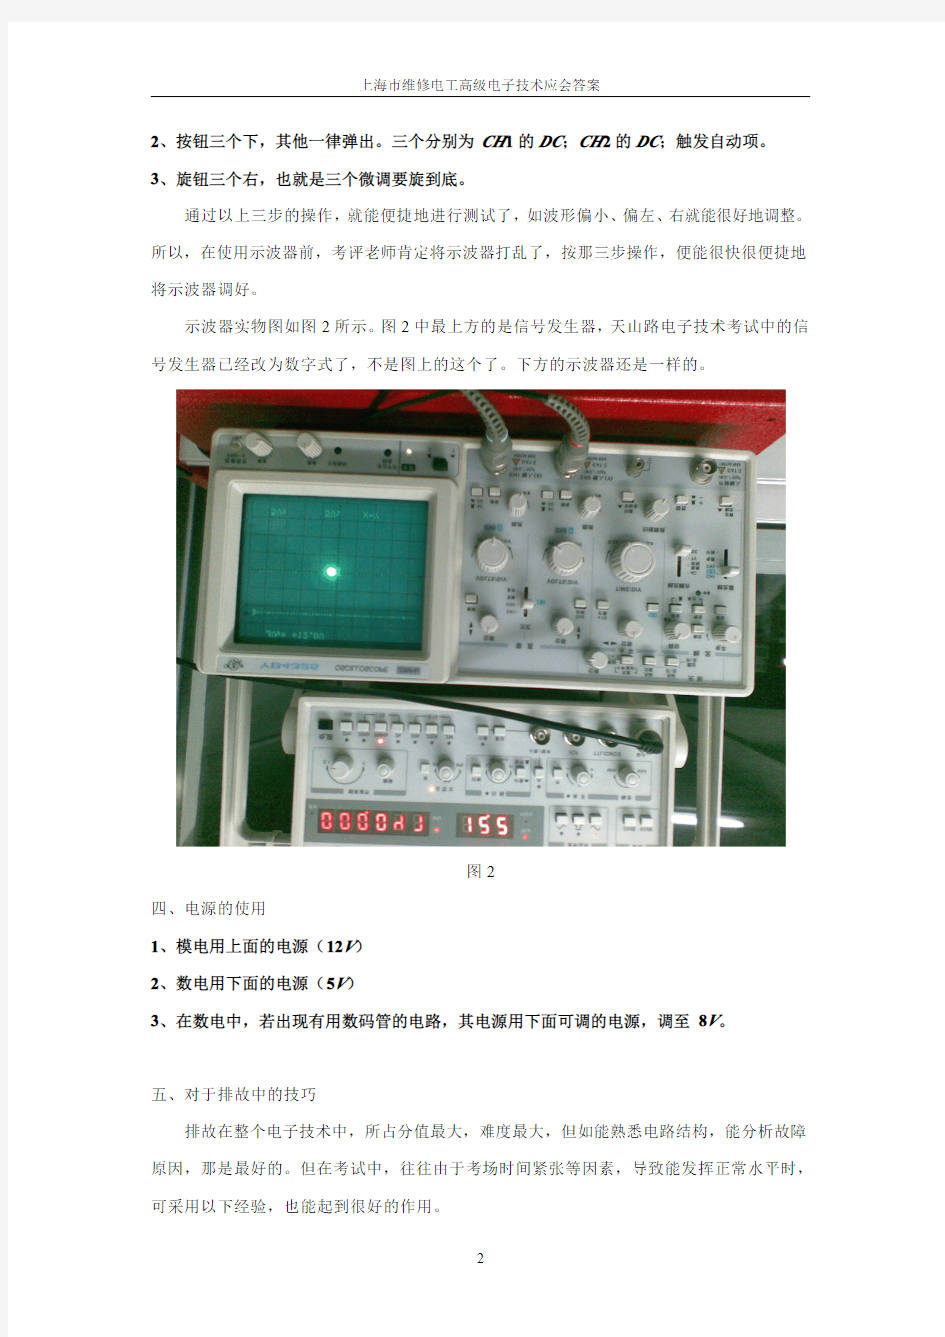 上海市维修电工高级电子技术应会答案